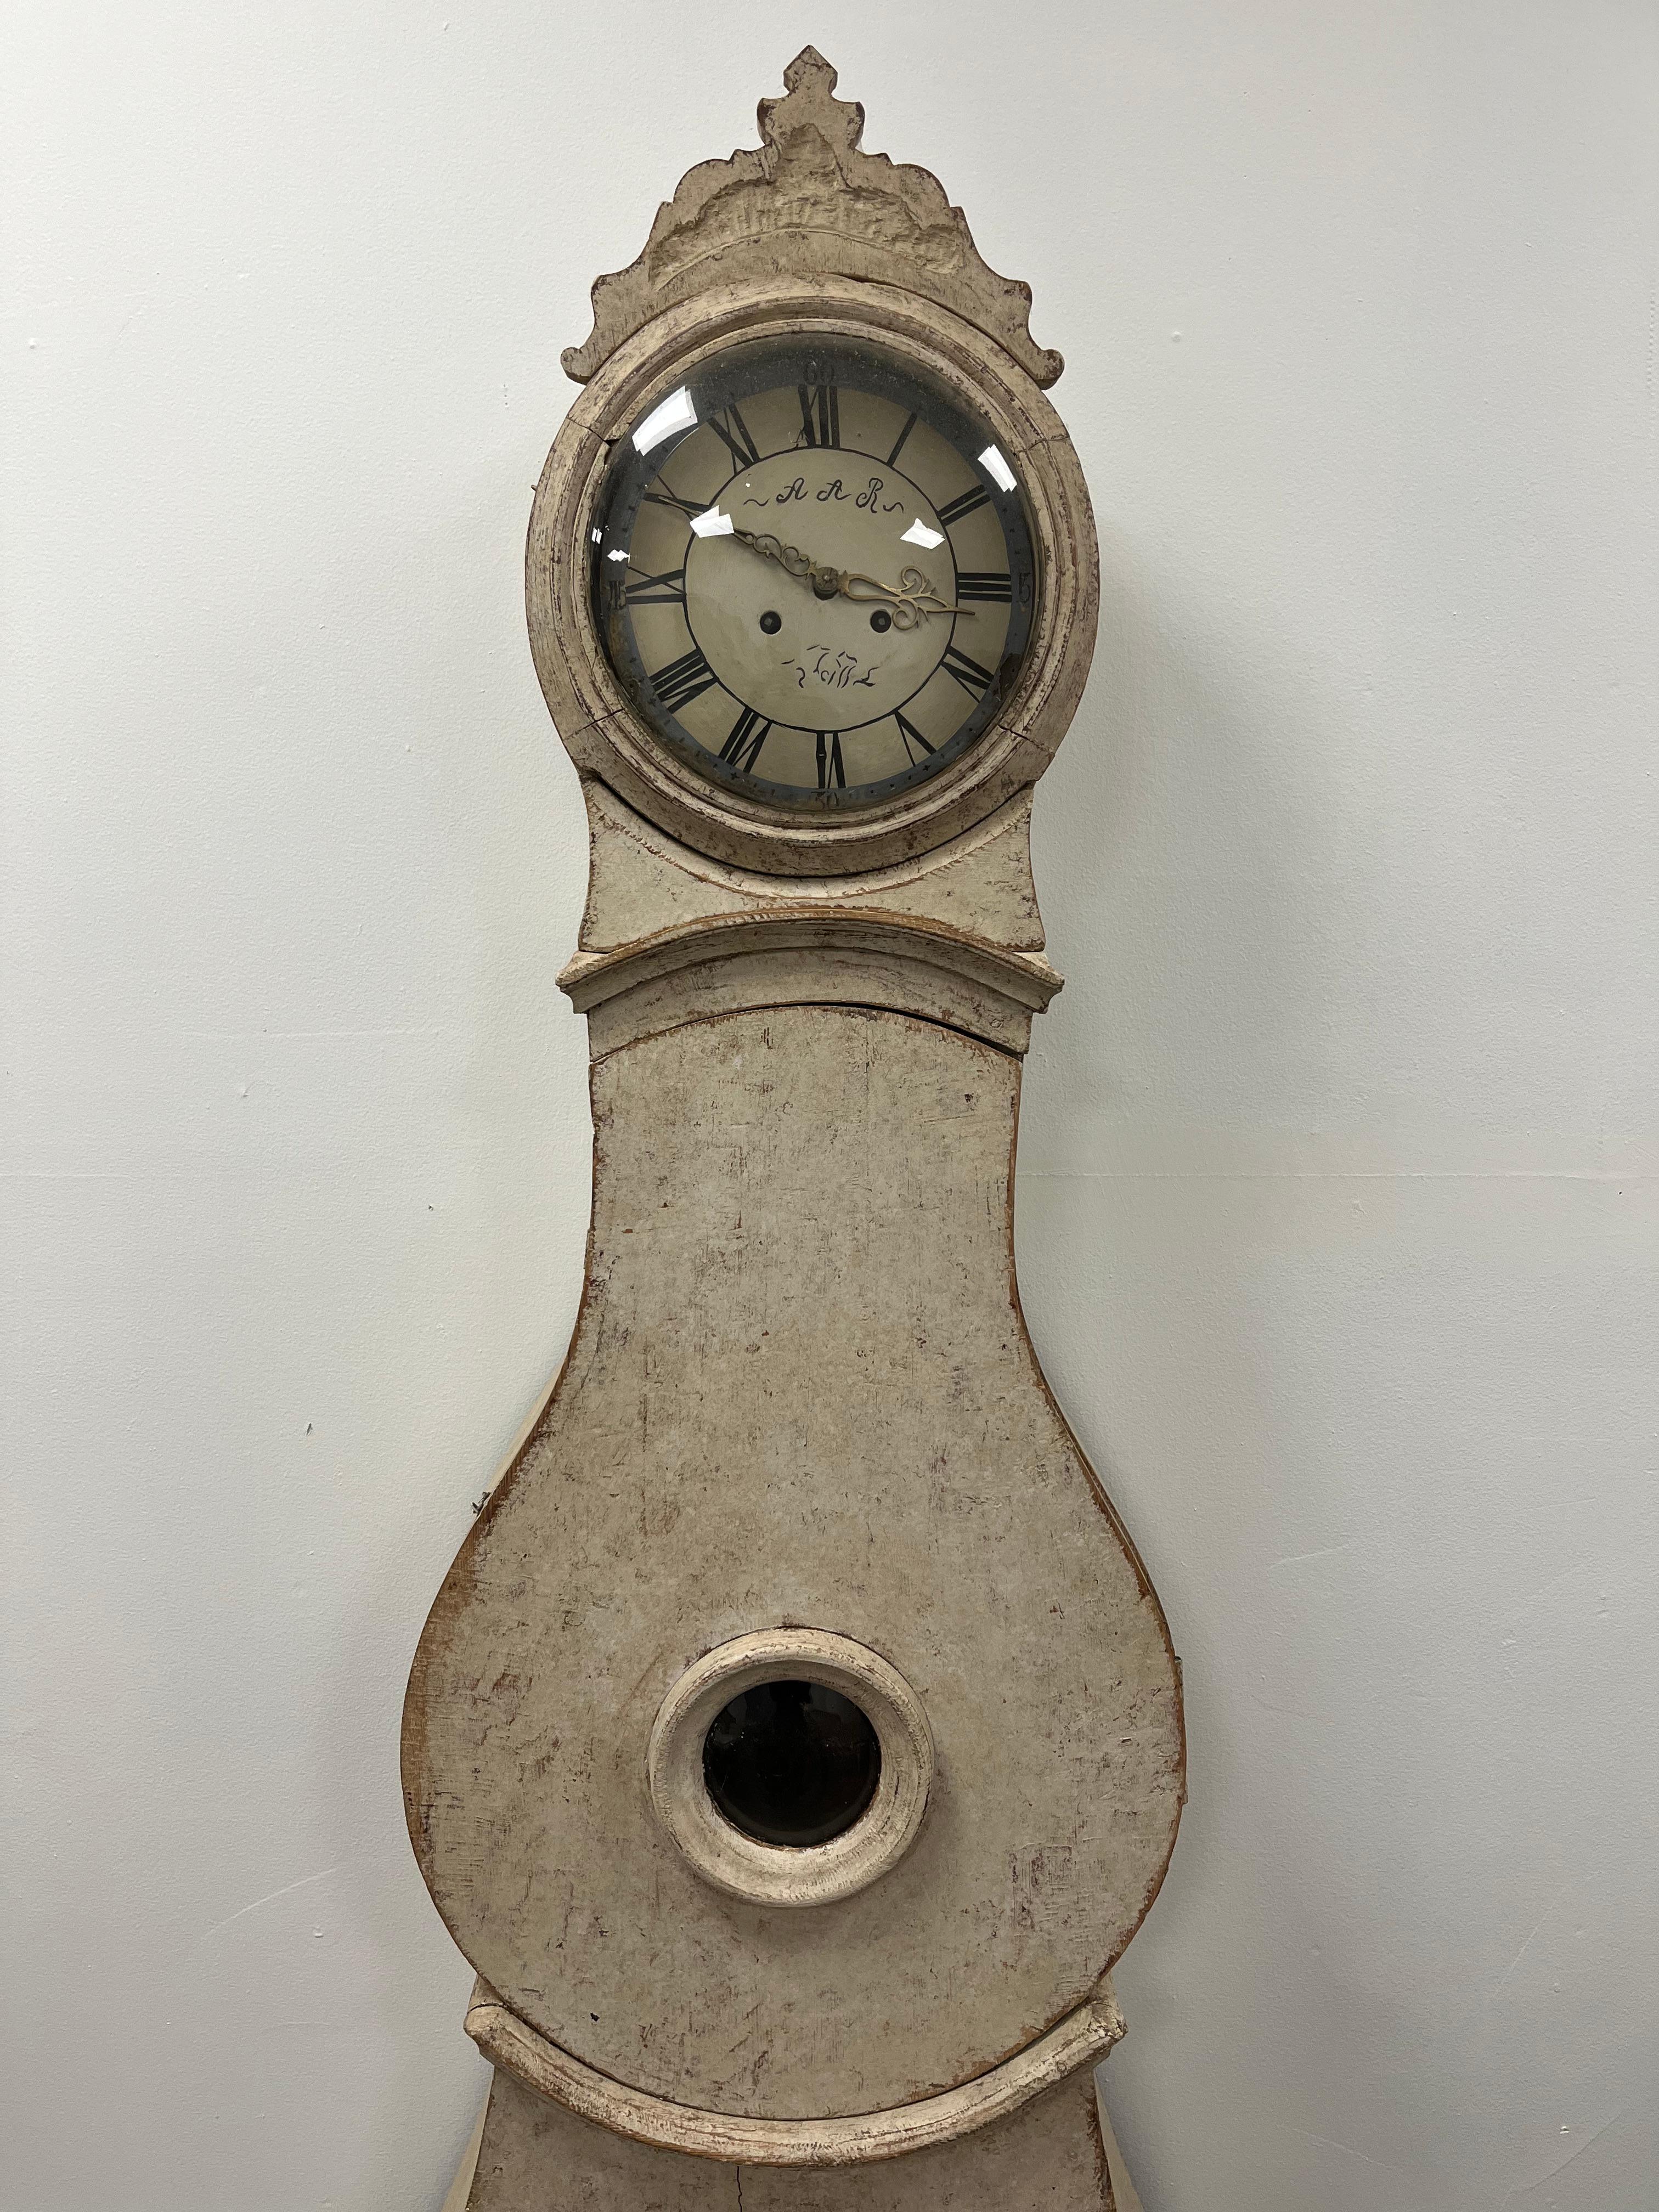 Ein einzigartiges schwedisches Gehäuse Uhr neu lackiert in Creme Farbe. Die Uhr wird als dekoratives Stück verkauft, keine mechanische Garantie. Inklusive Gewichte (aber ohne Pendel und Schlüssel).
